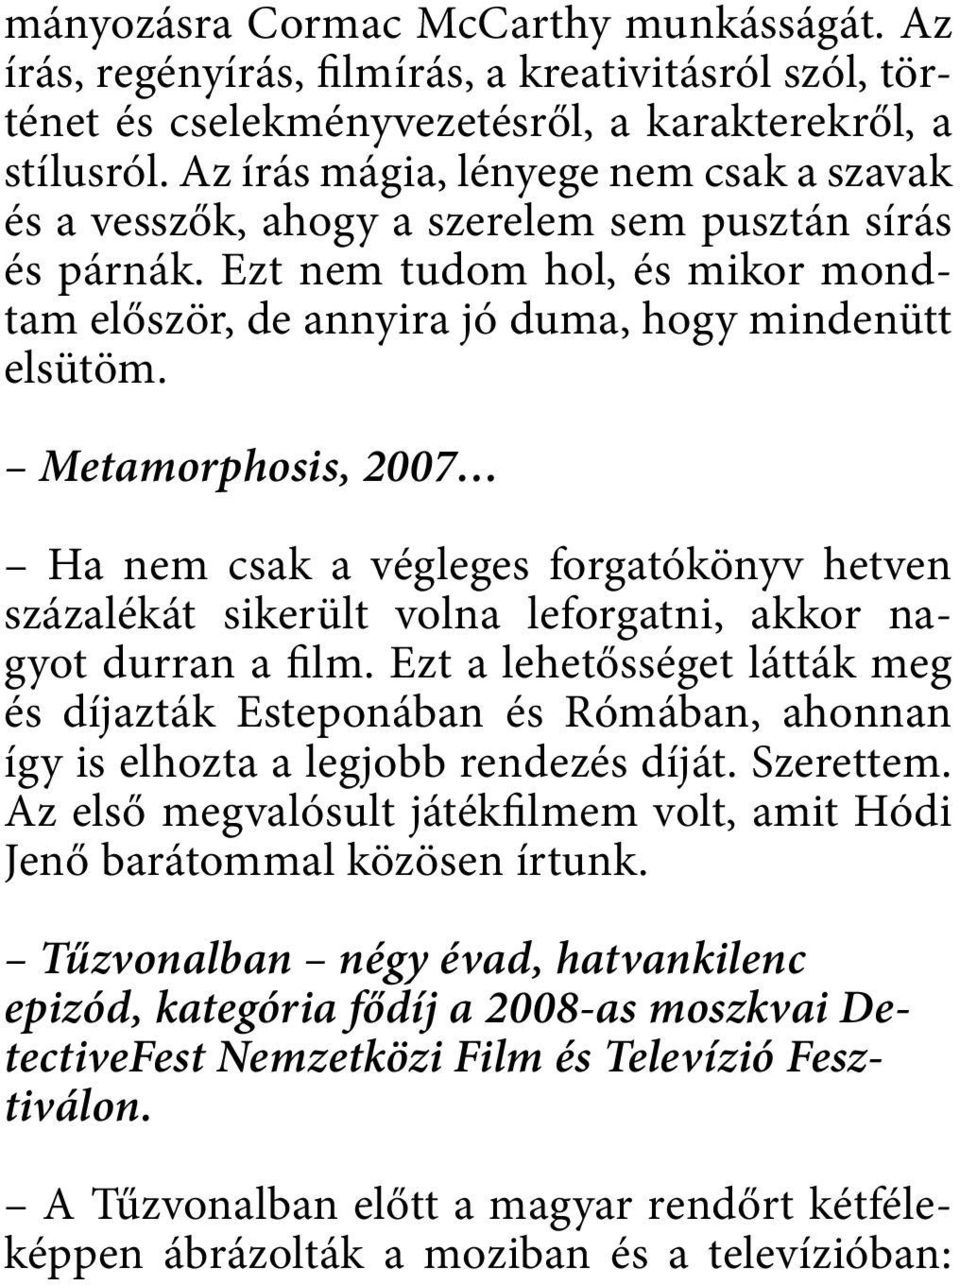 Metamorphosis, 2007 Ha nem csak a végleges forgatókönyv hetven százalékát sikerült volna leforgatni, akkor nagyot durran a film.